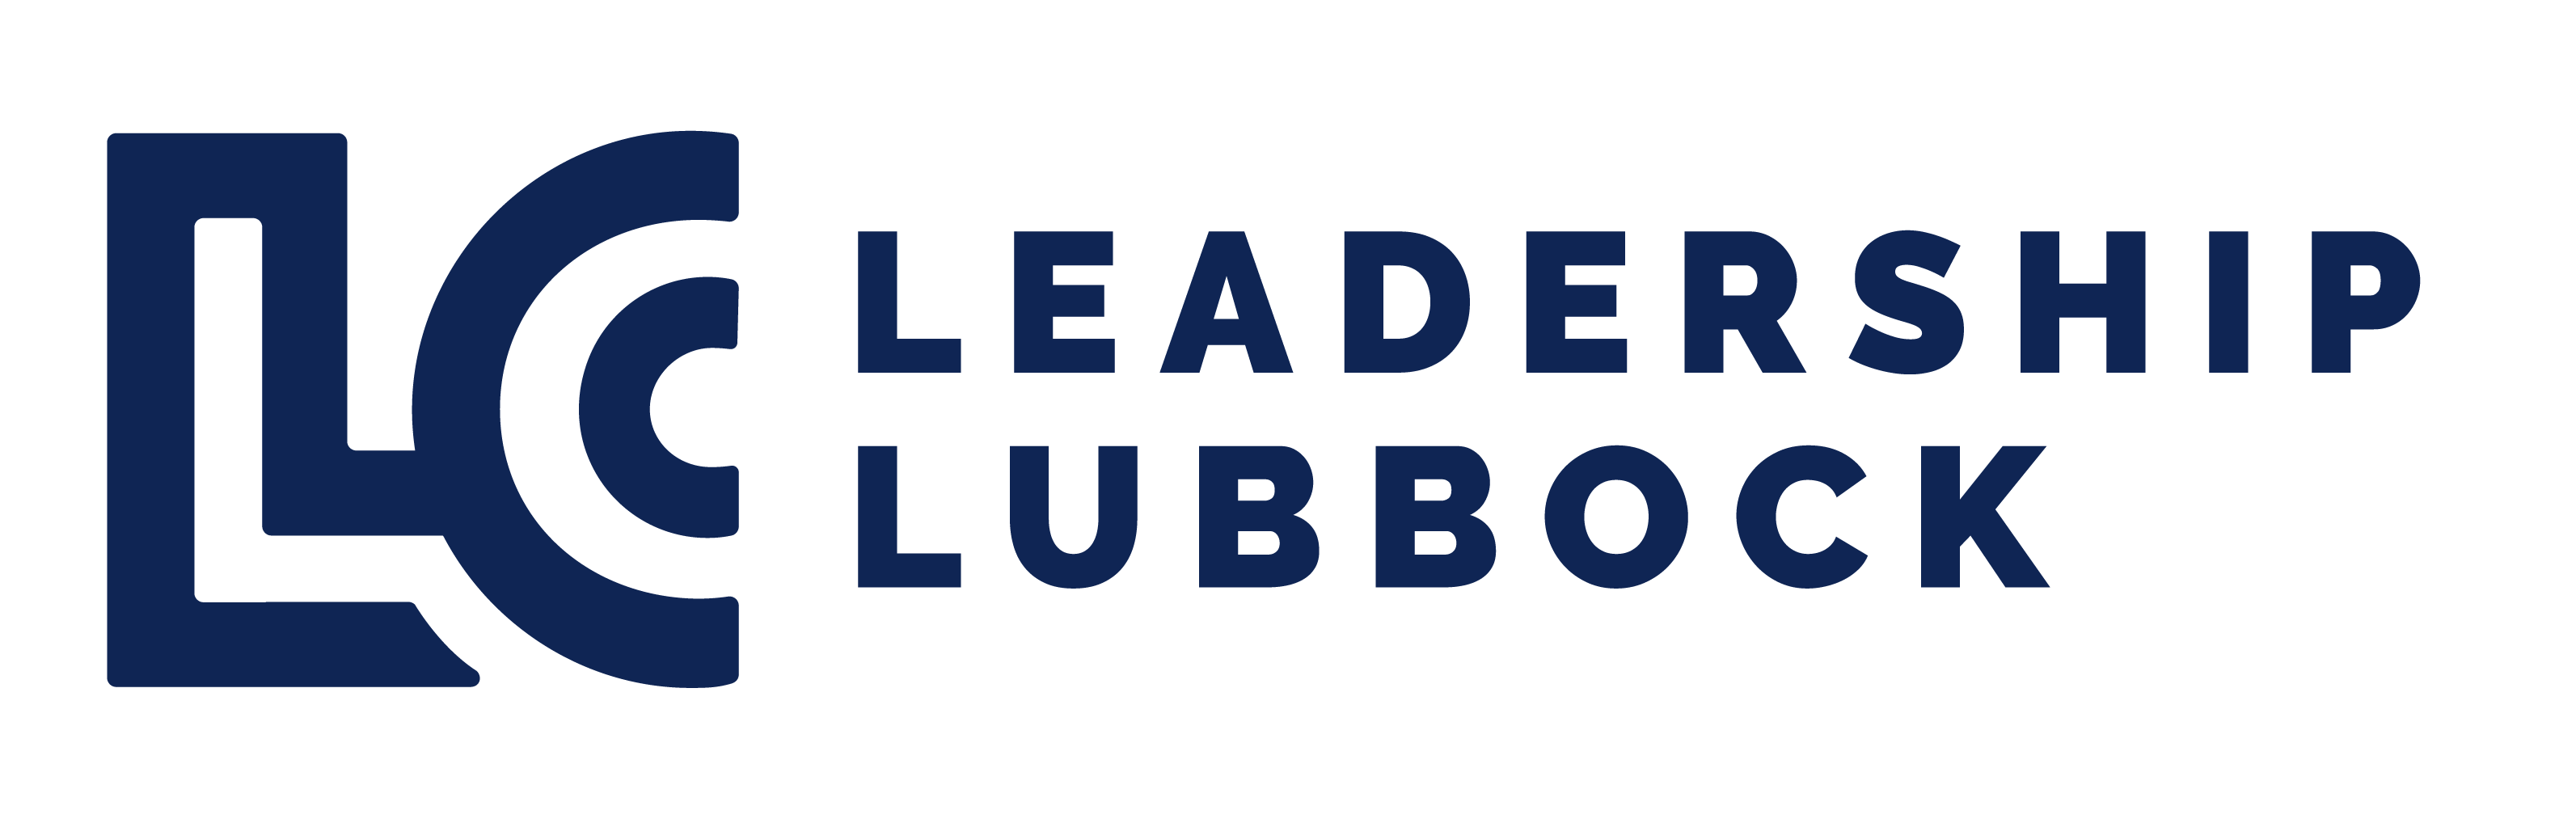 Leadership Lubbock_Horizontal_Navy